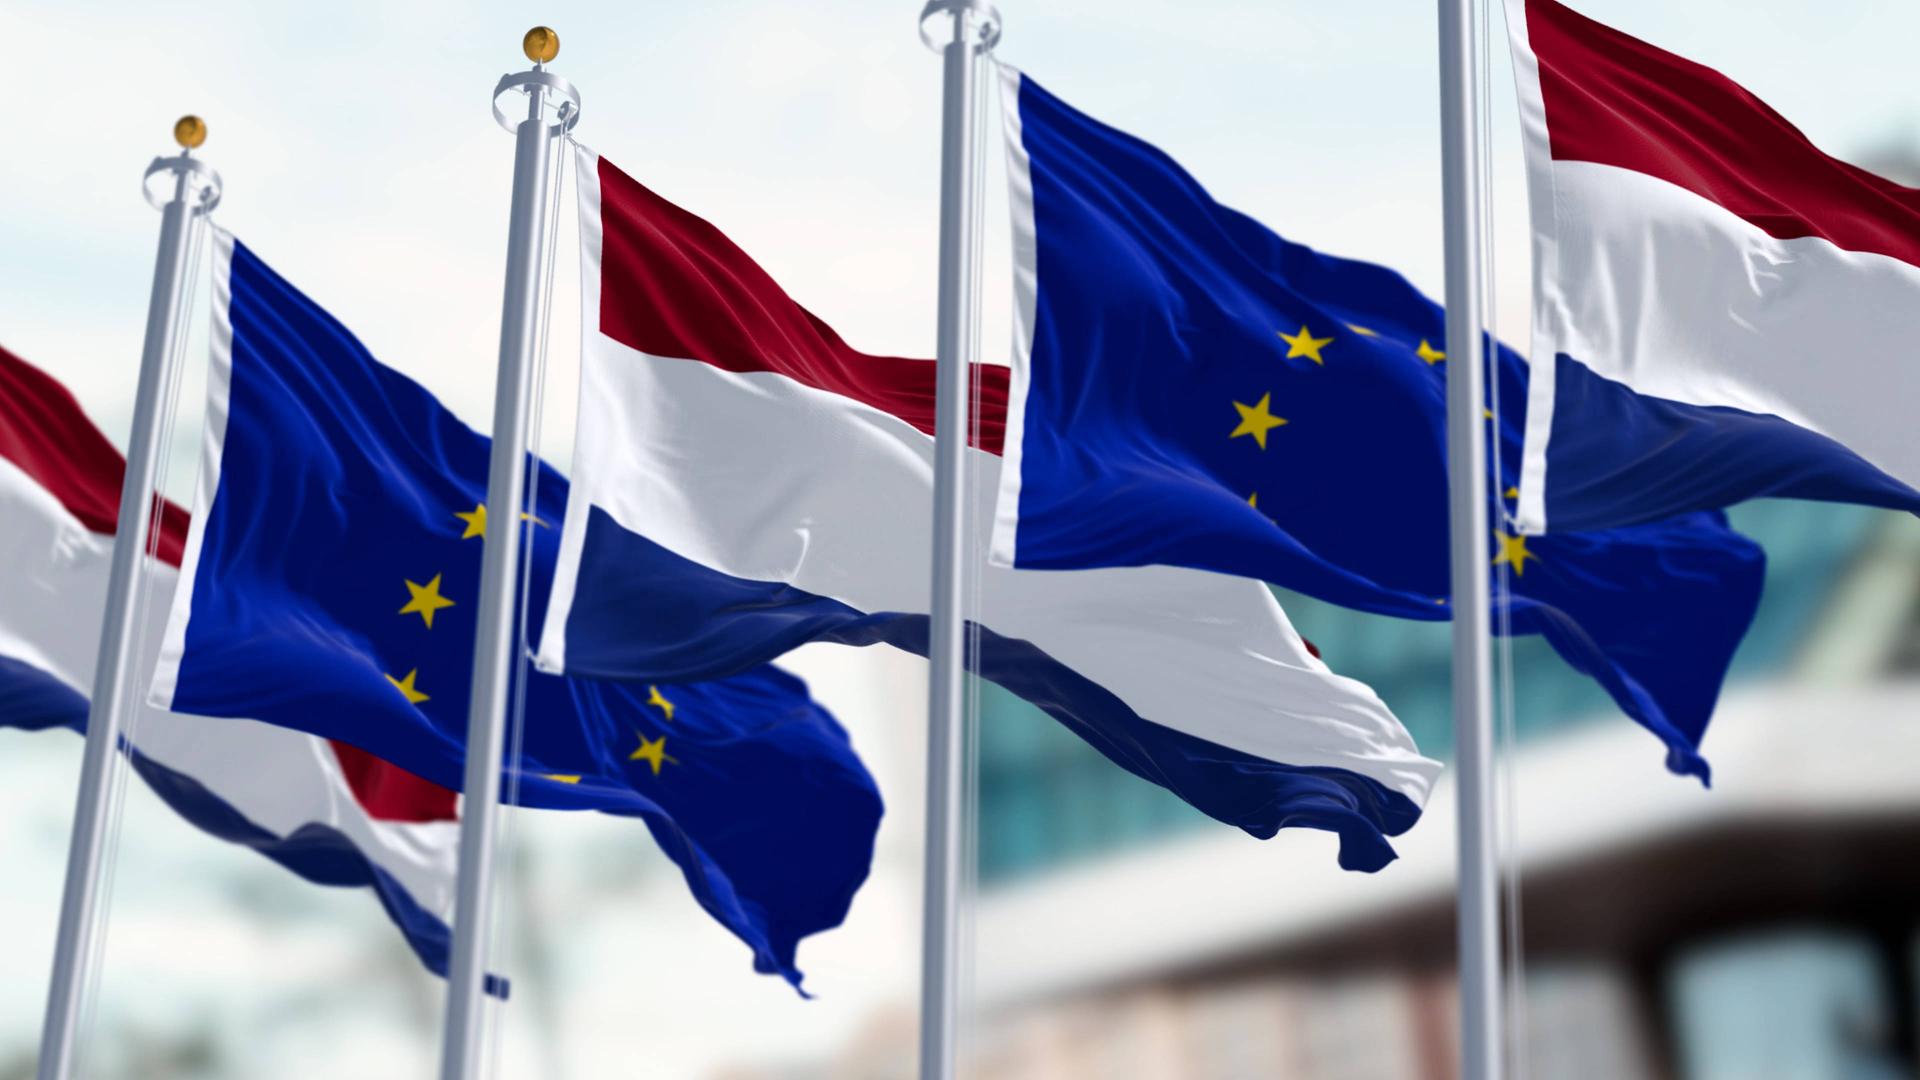 Flaggen der EU und der Niederlanden wehen nebeneinander im Wind.